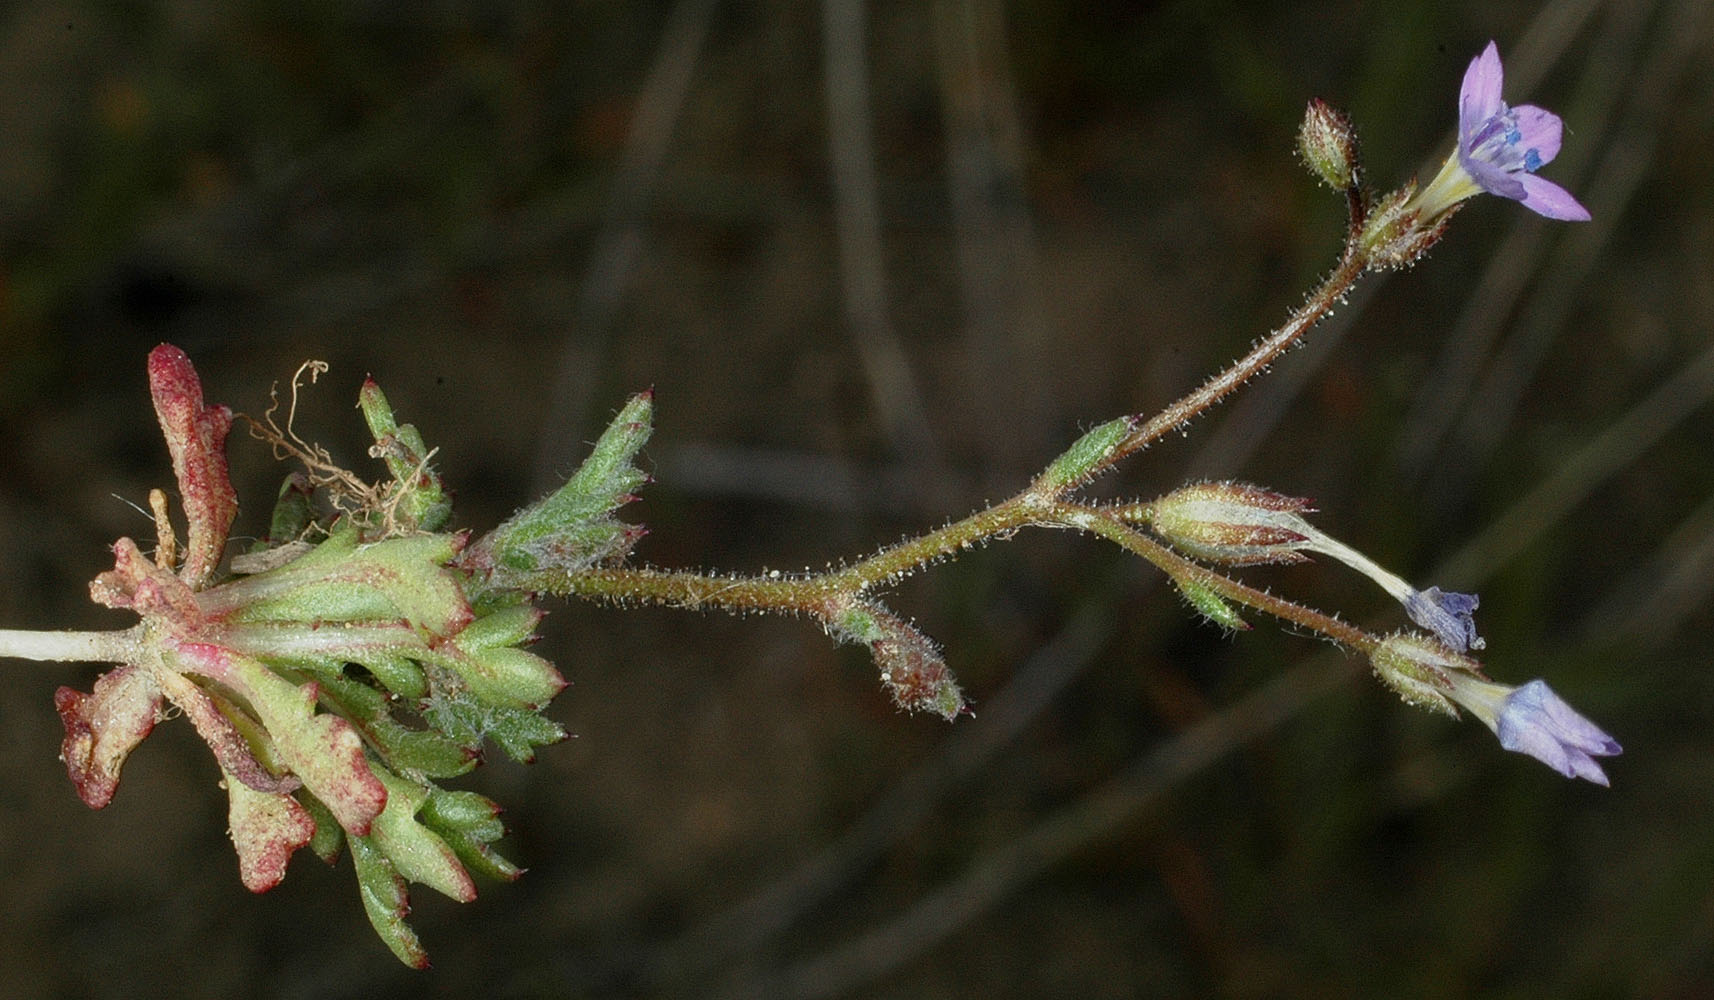 Flora of Eastern Washington Image: Gilia inconspicua